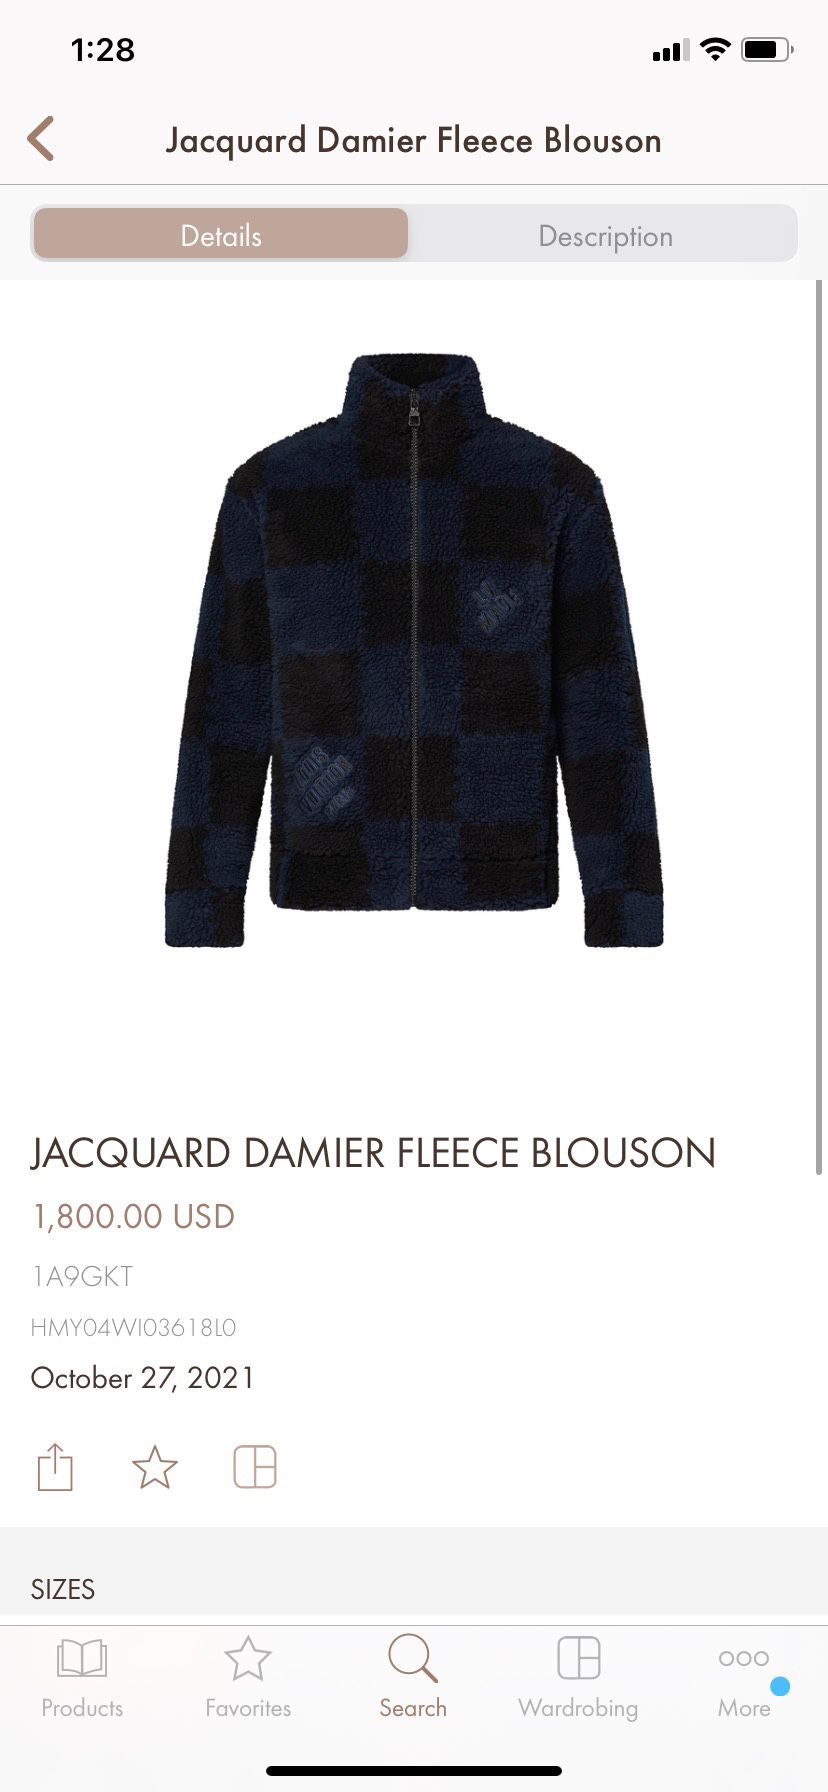 Jacquard Damier Fleece Blouson - Ready to Wear